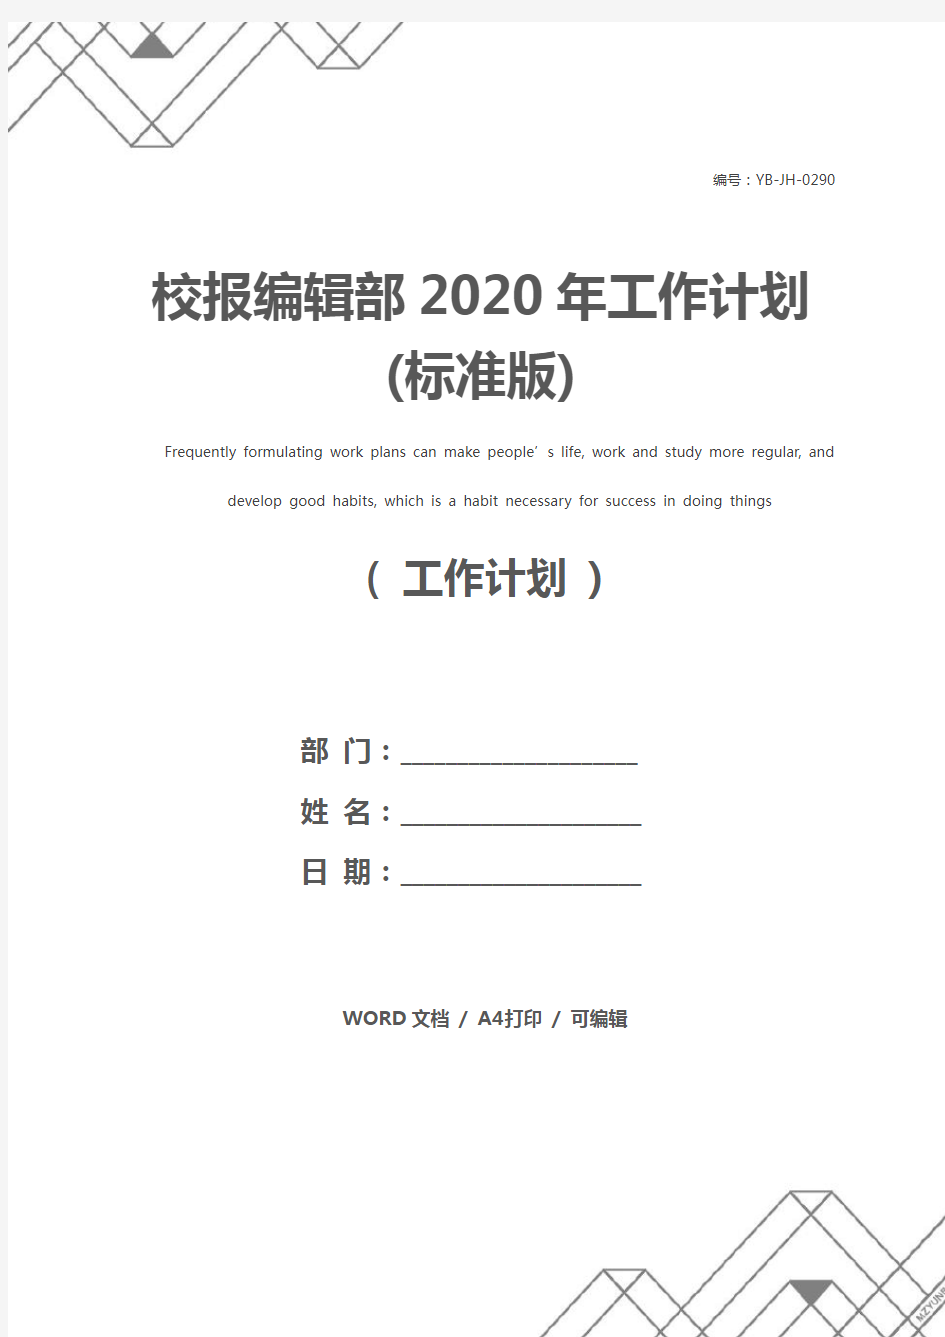 校报编辑部2020年工作计划(标准版)